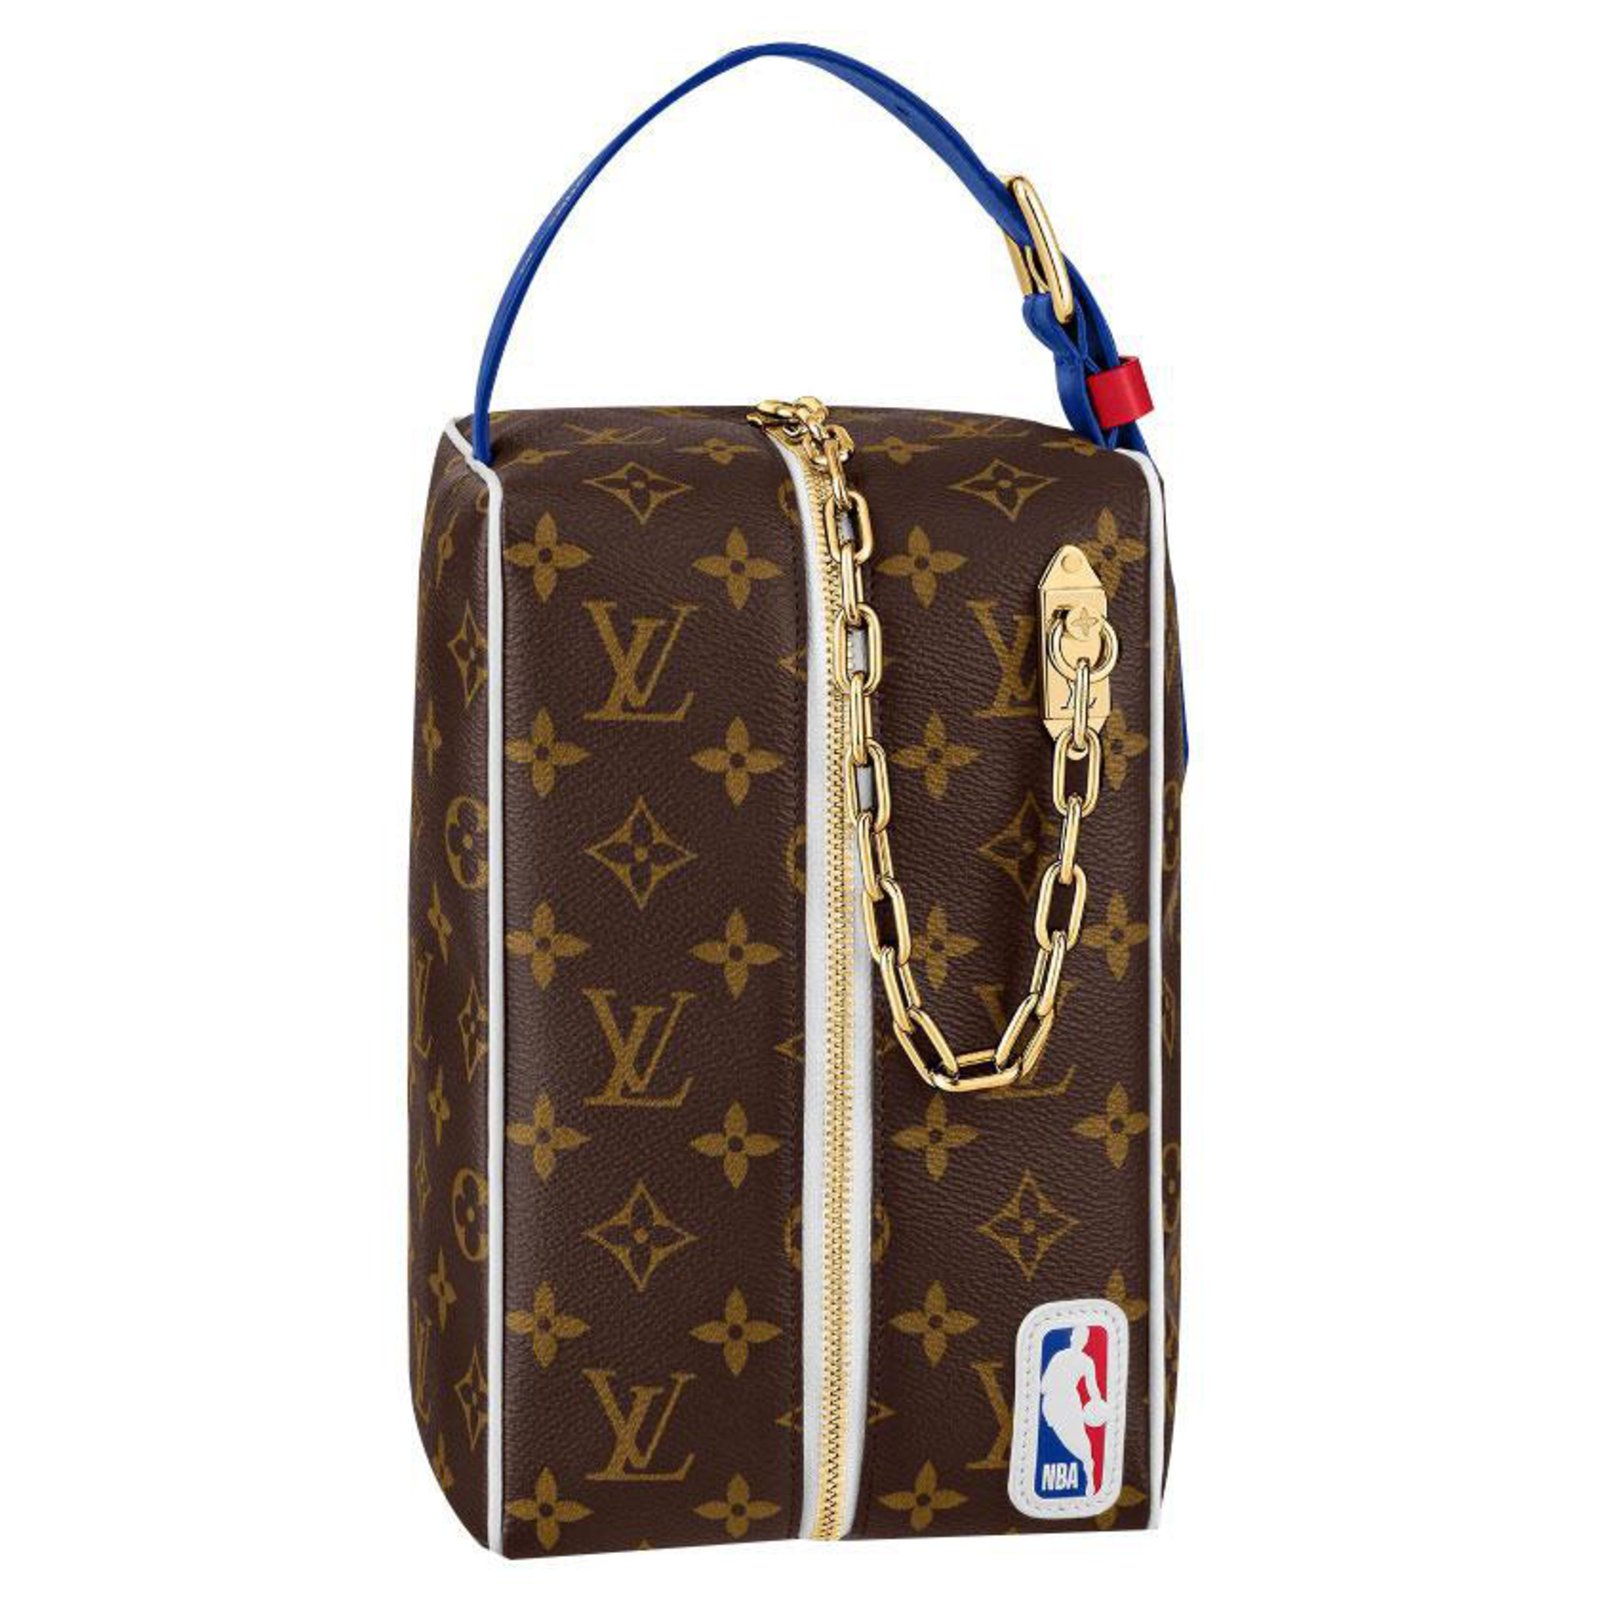 Louis Vuitton presenta su colección cápsula para hombre LV x NBA